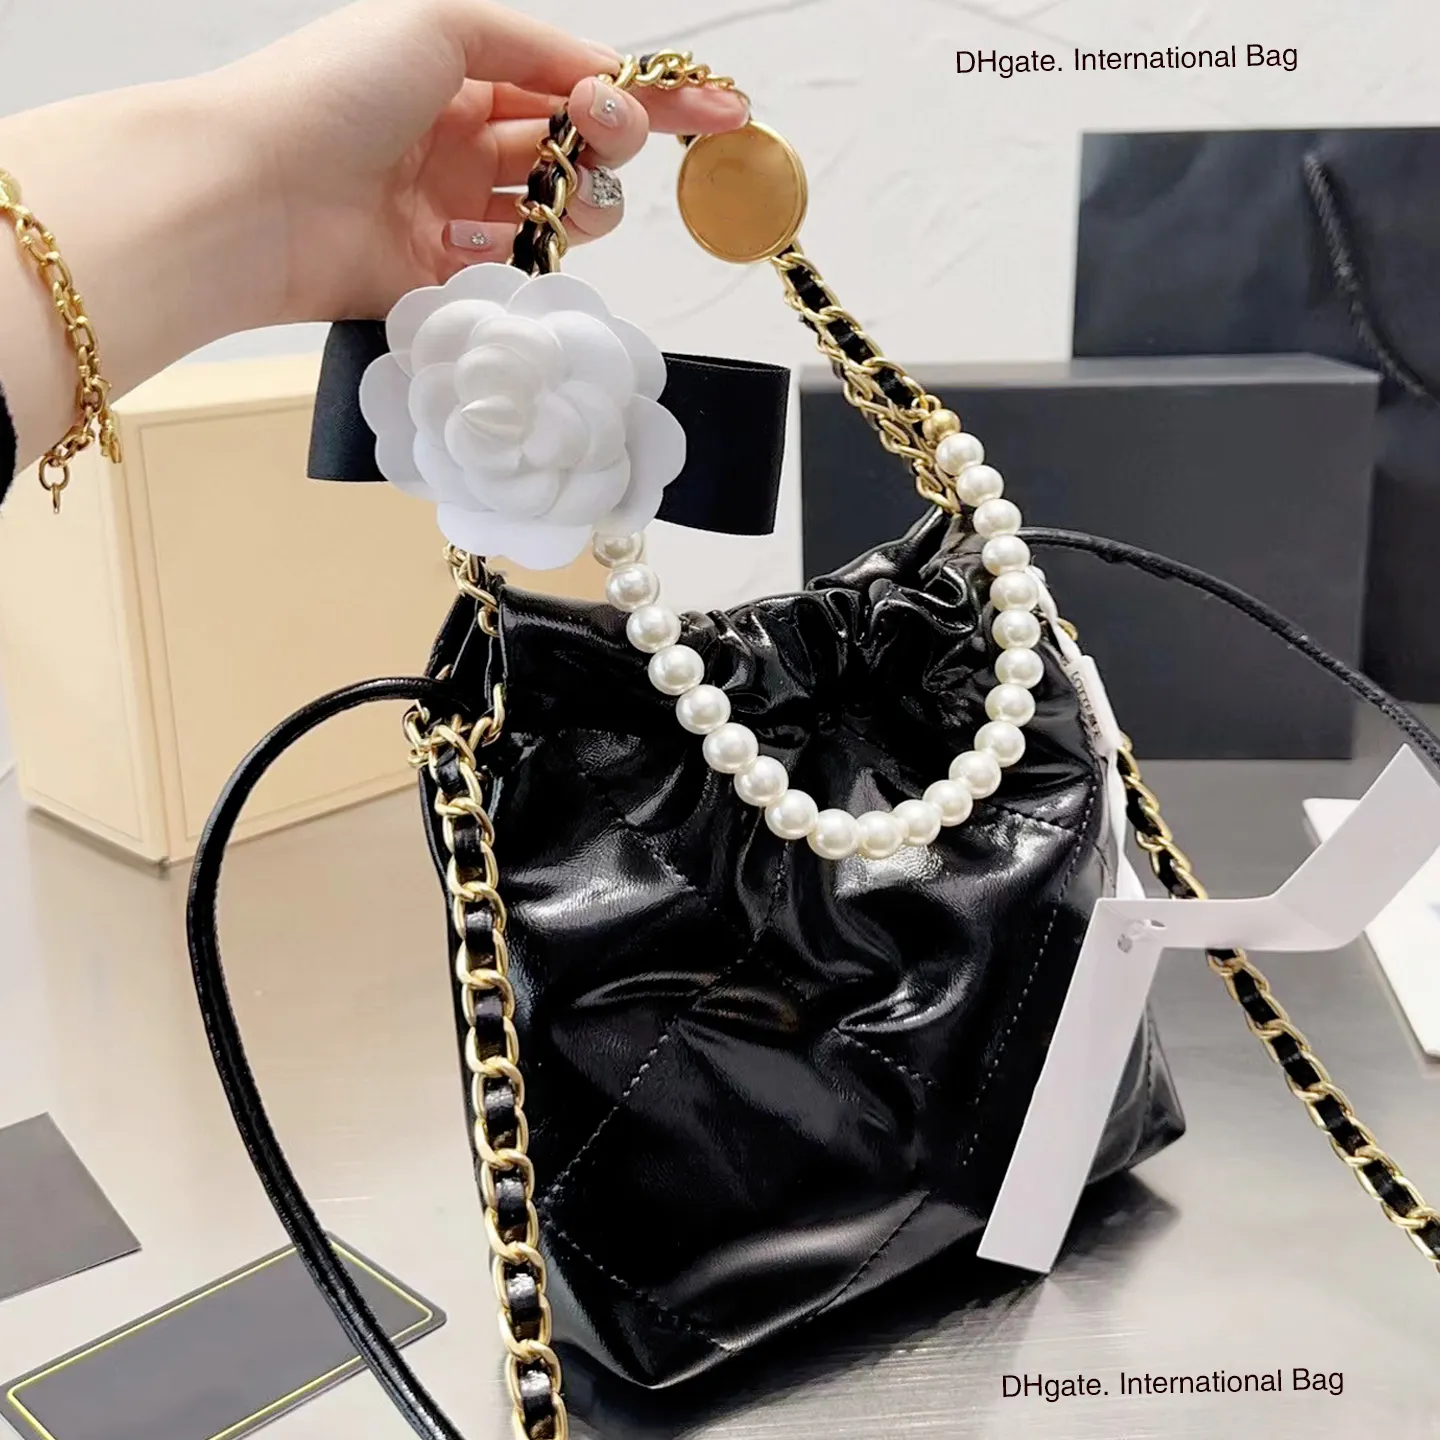 22bag Series Single Shoulder Crossbody Bag Smooth Calf Leather Bucket Bag With DrawString Opening med överdimensionerad kapacitet och ikoniska diamantmasks sömdesignväska